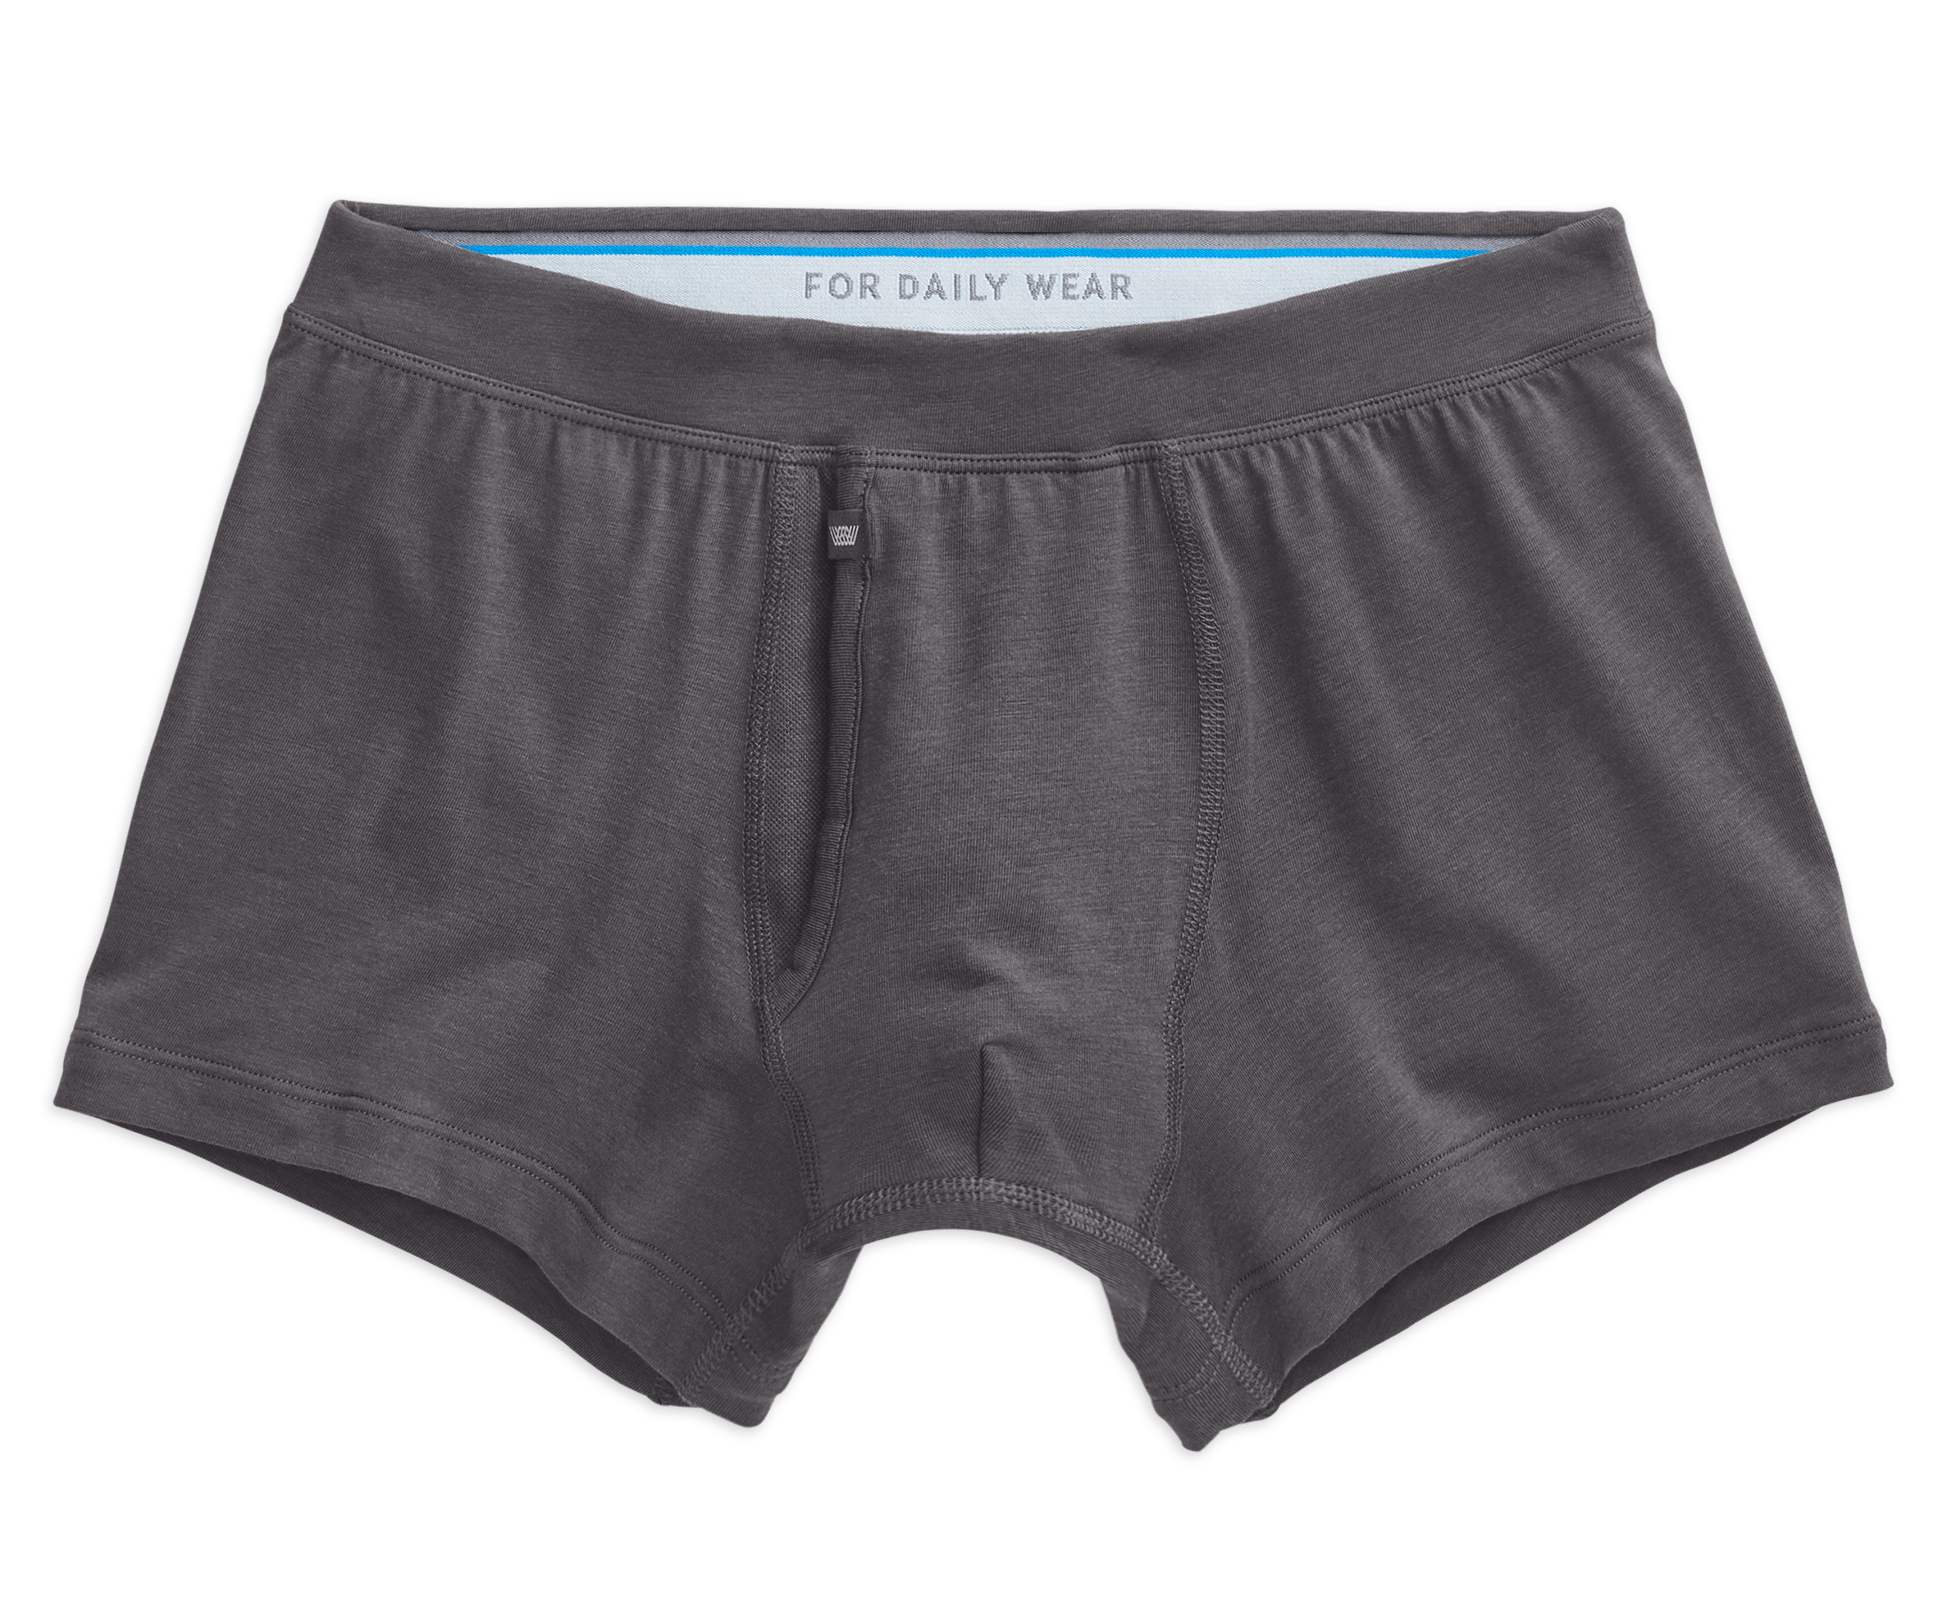 XYXX Menâ€™s Aero Silver Cotton Underwear for Men, Anti-Odour Silver Tech,  Lasting